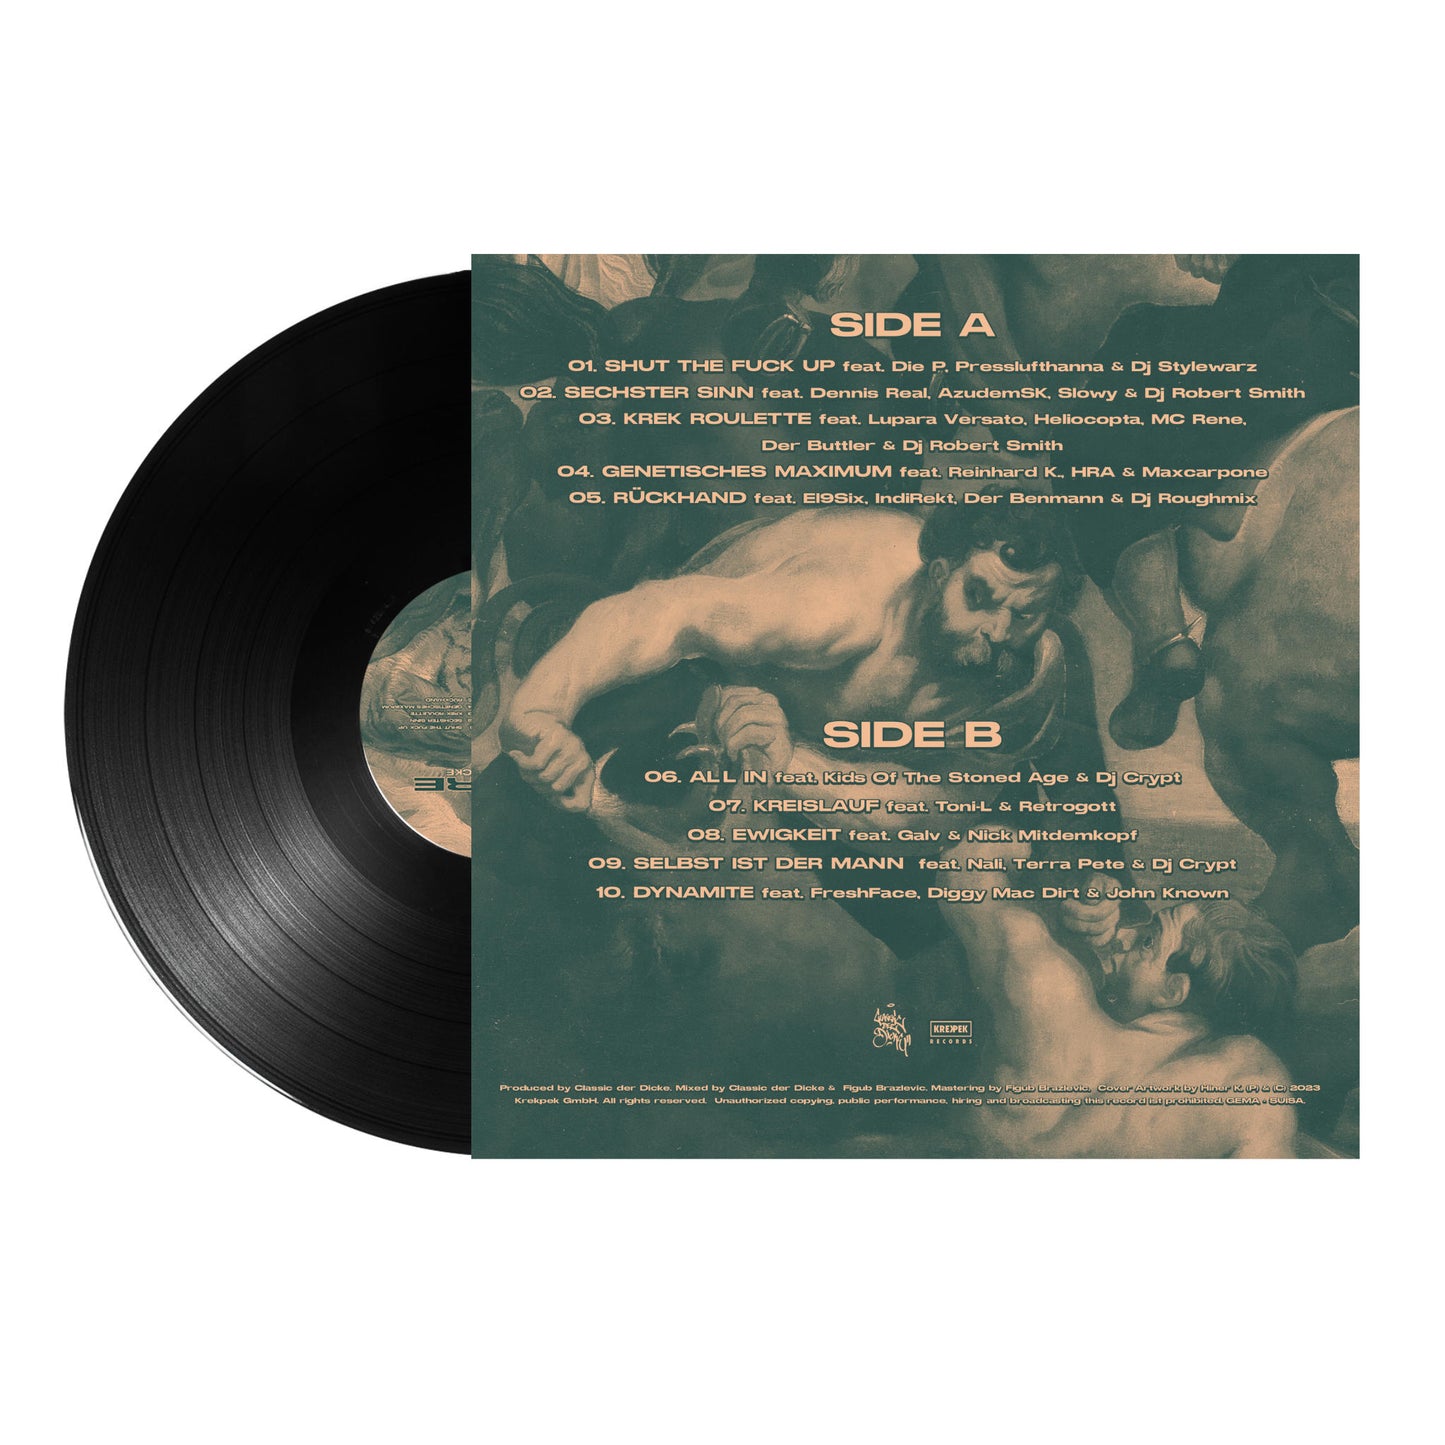 Classic der Dicke - Empire [Vinyl]